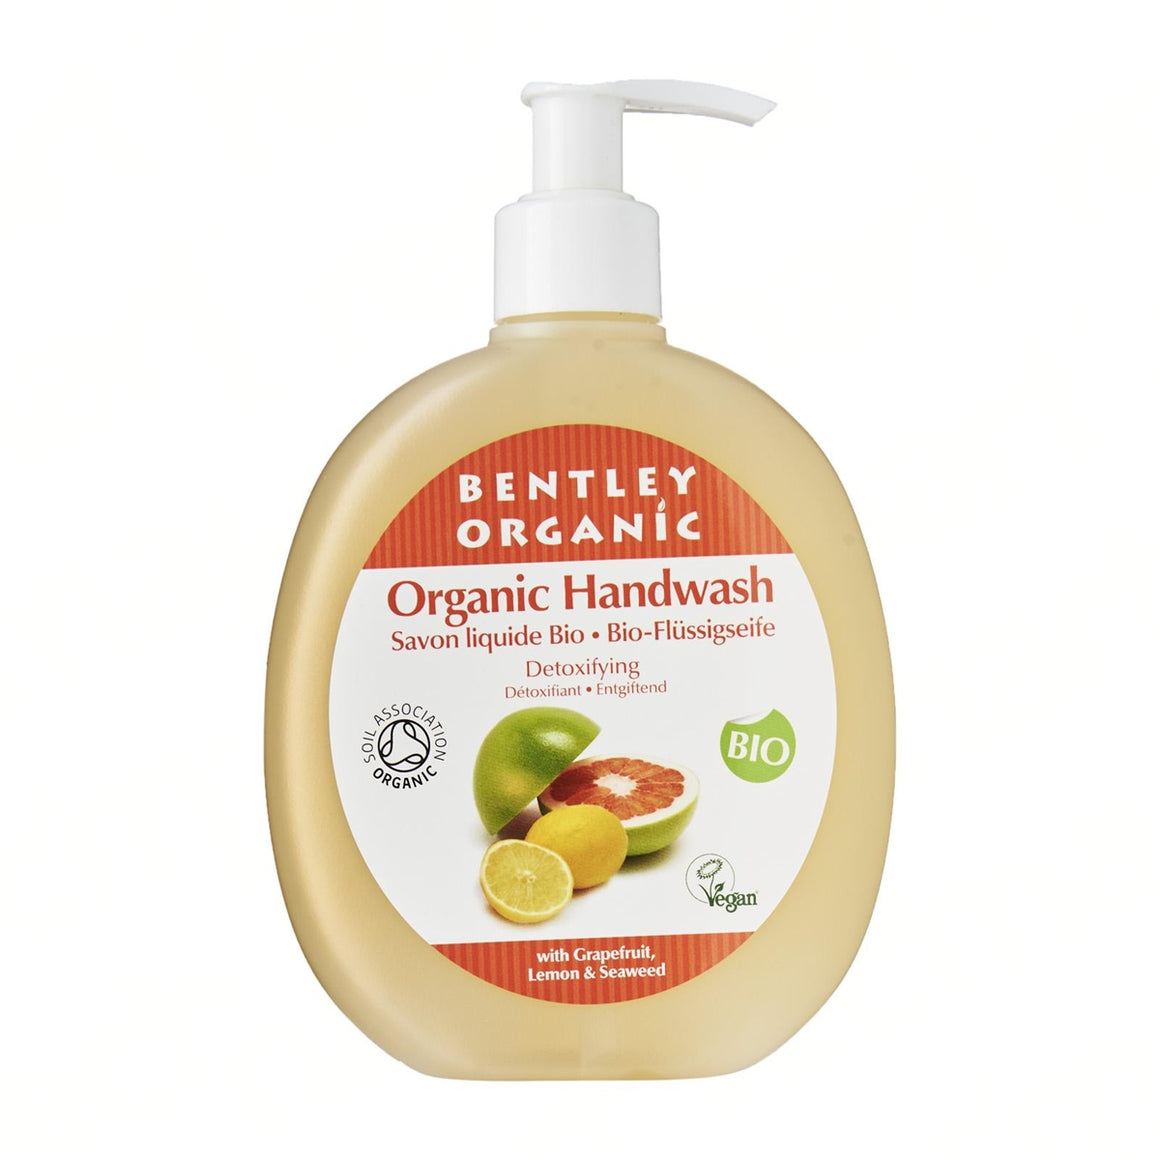 Detoxifying Organic Handwash - Aldha